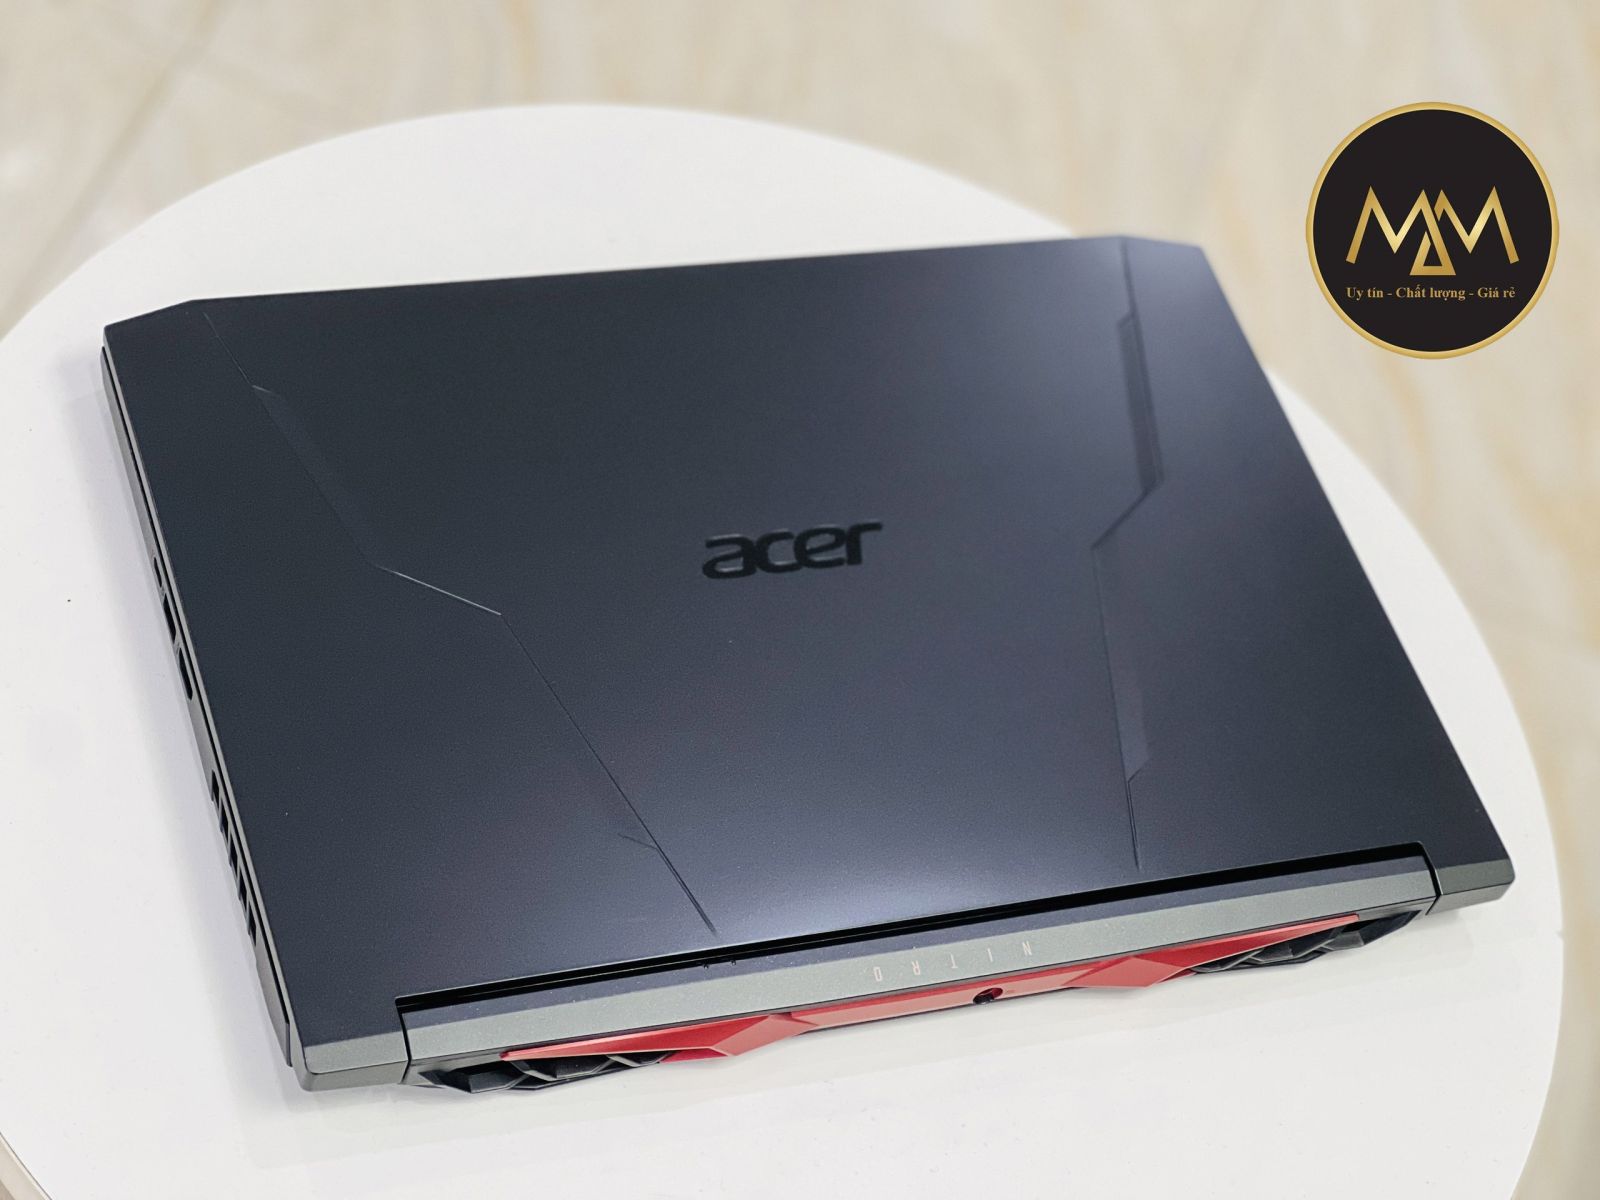 Acer Nitro 5 Gaming AN515 45 R3SM Ryzen 5 5600H/ SSD 512GB/ VGA GTX 1650 4GB/ 144HZ LED SRGB/ CHUYÊN GAME GIÁ rẻ